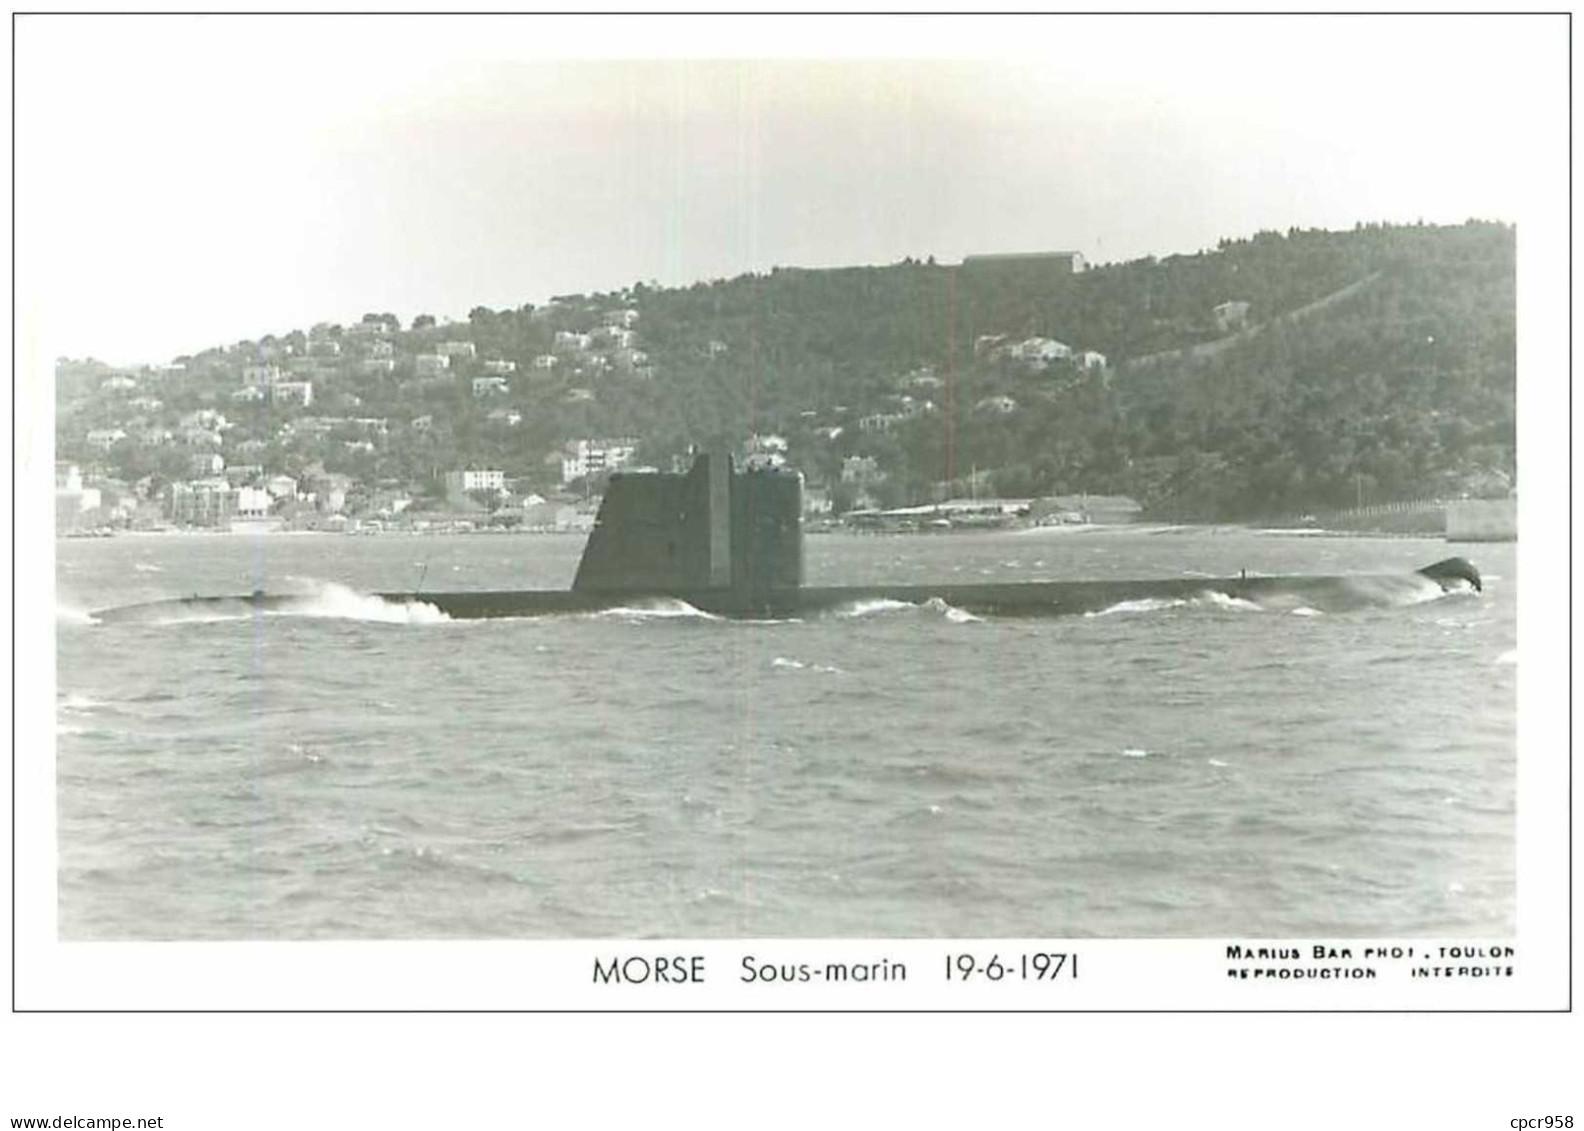 SOUS-MARINS.n°24880.PHOTO DE MARIUS BAR.MORSE.19.6.1971 - Unterseeboote